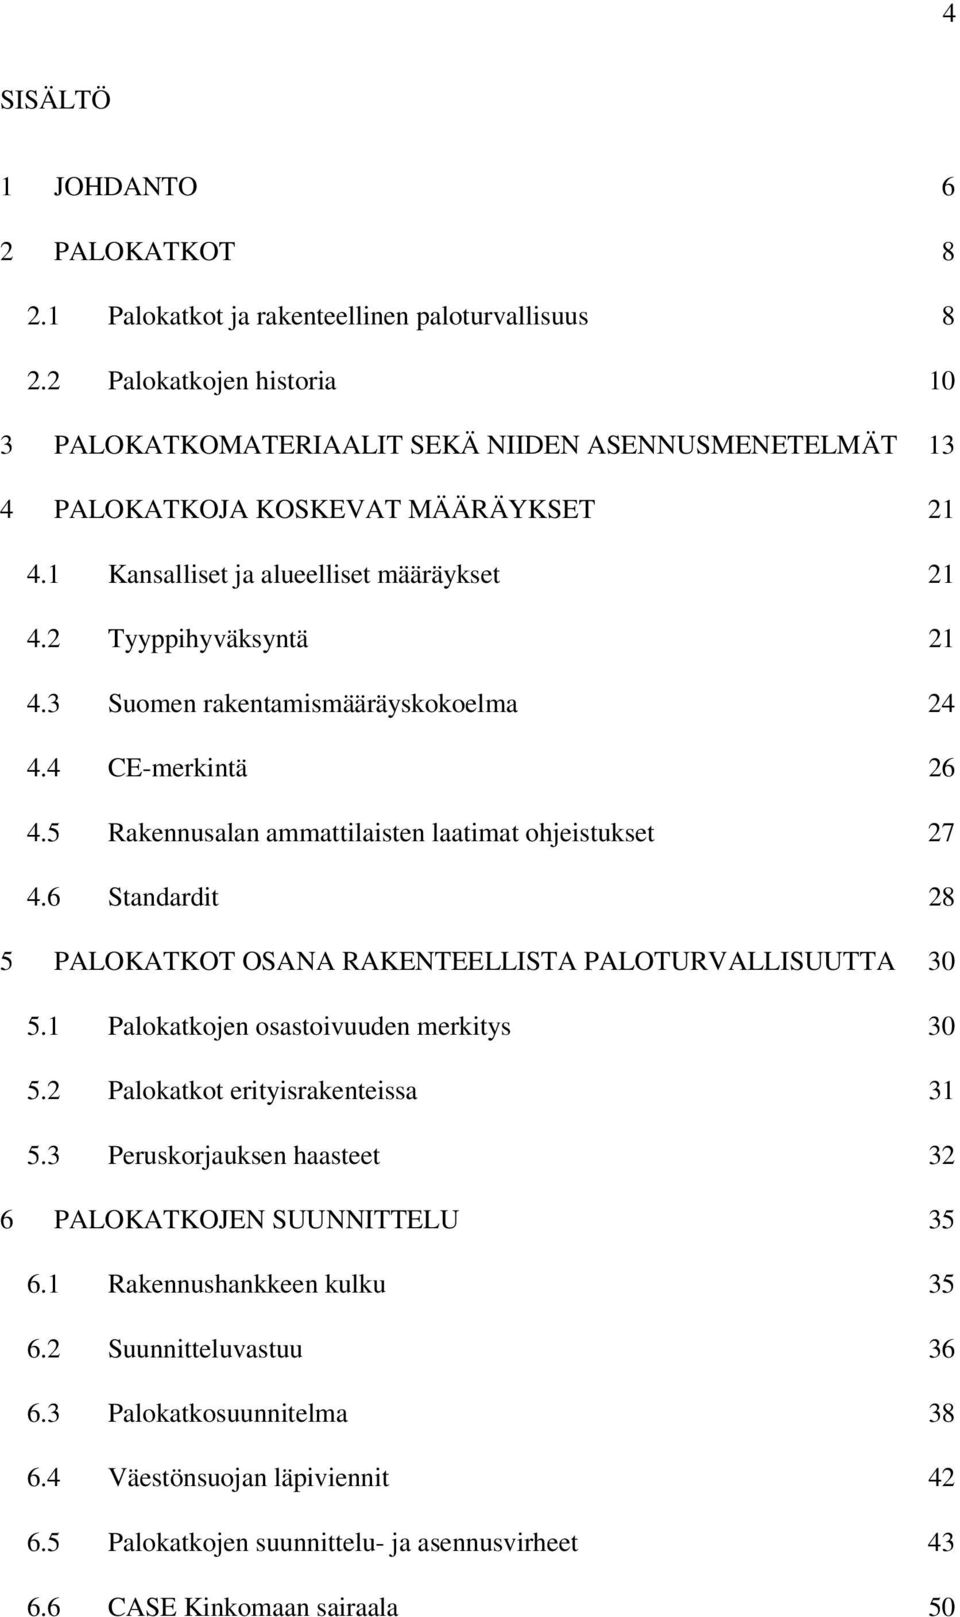 3 Suomen rakentamismääräyskokoelma 24 4.4 CE-merkintä 26 4.5 Rakennusalan ammattilaisten laatimat ohjeistukset 27 4.6 Standardit 28 5 PALOKATKOT OSANA RAKENTEELLISTA PALOTURVALLISUUTTA 30 5.